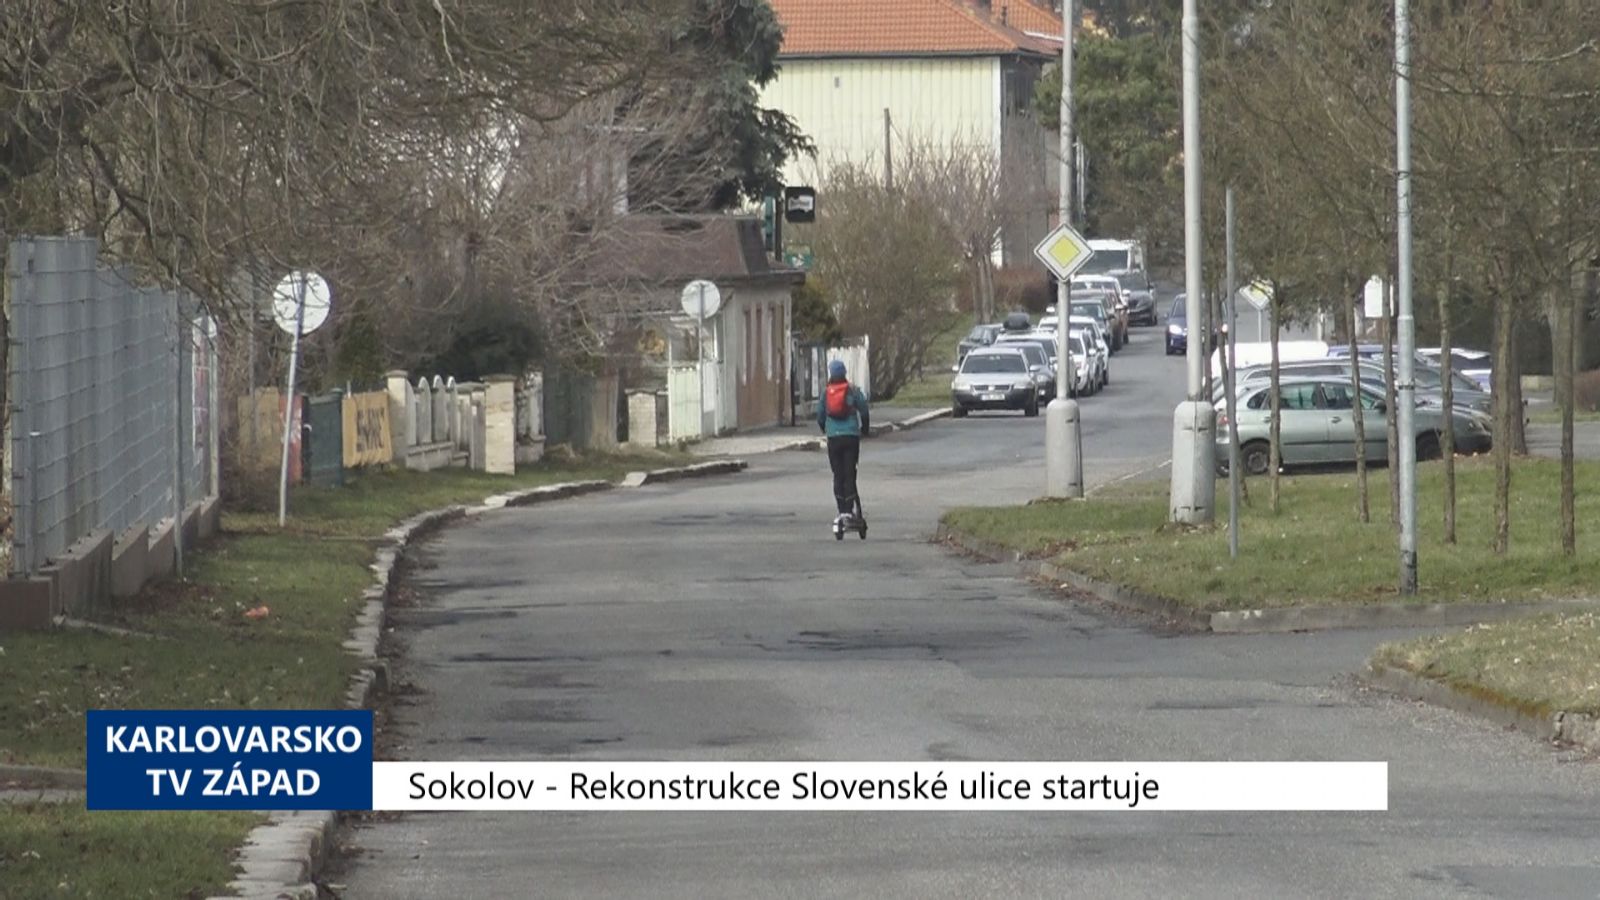 Sokolov: Rekonstrukce Slovenské ulice startuje (TV Západ)